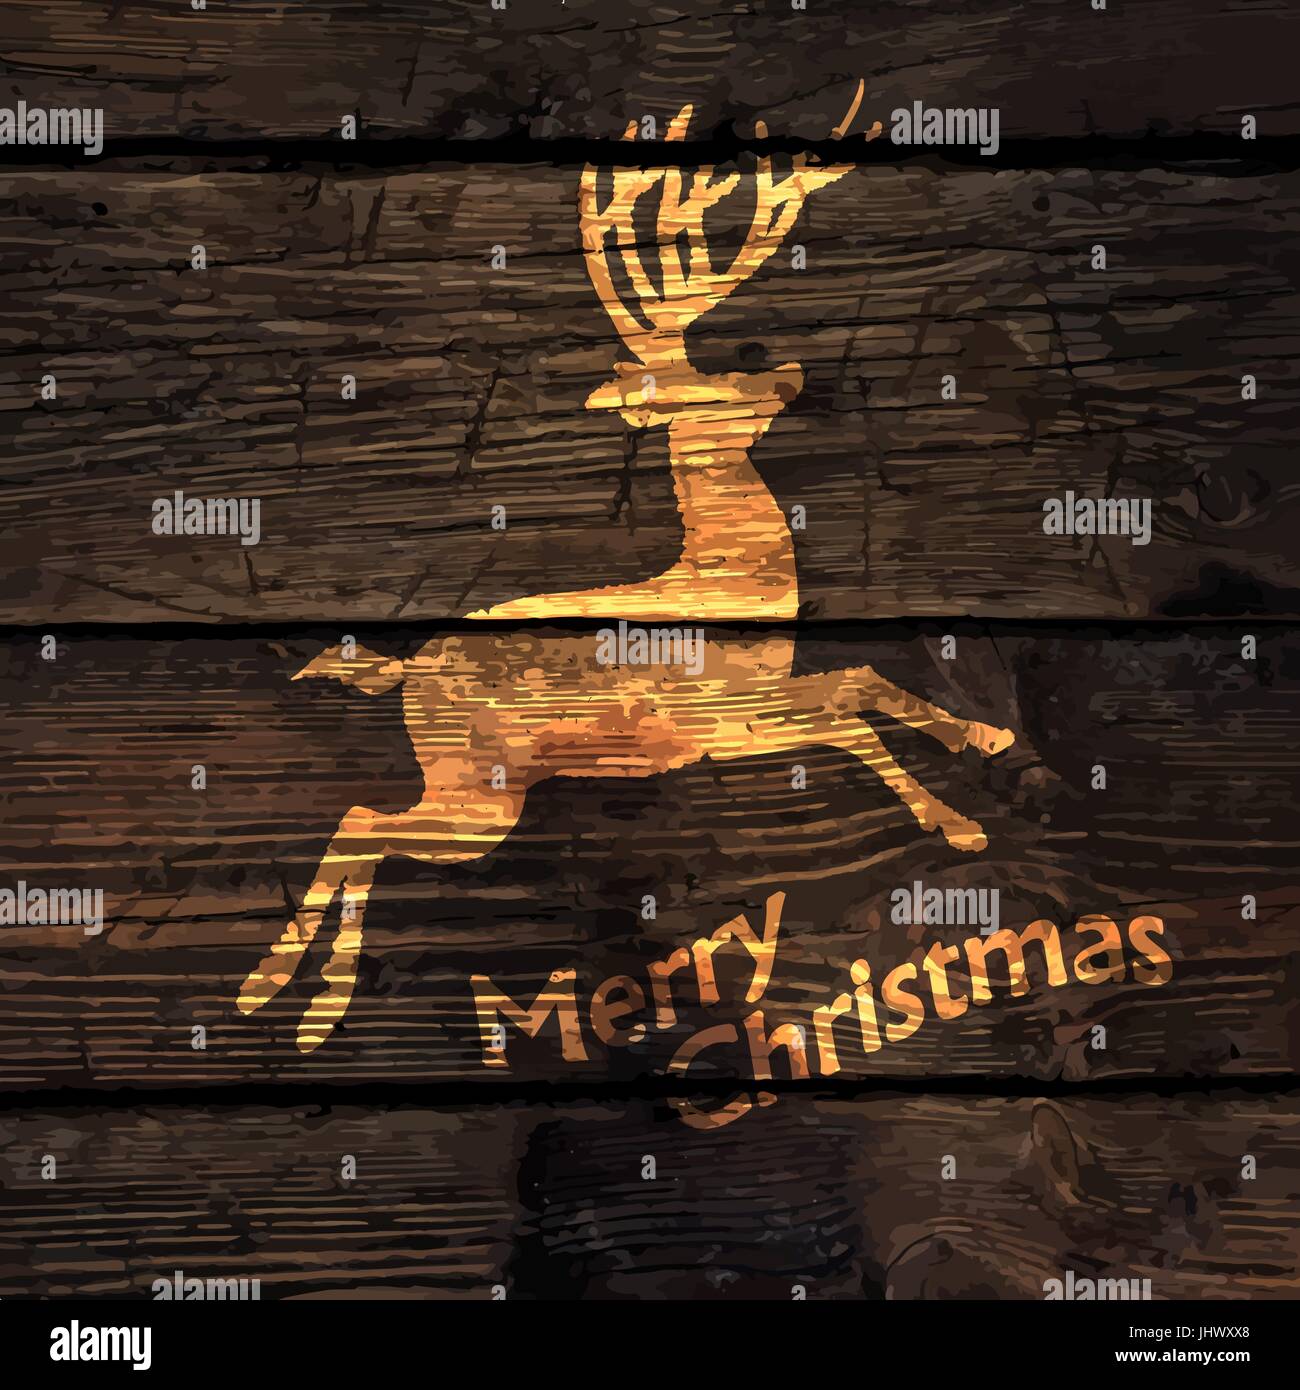 Weihnachtsgrußkarte mit glänzendem Gold Hirsch Silhouette auf Holztextur Hintergrund. Vektor-illustration Stock Vektor